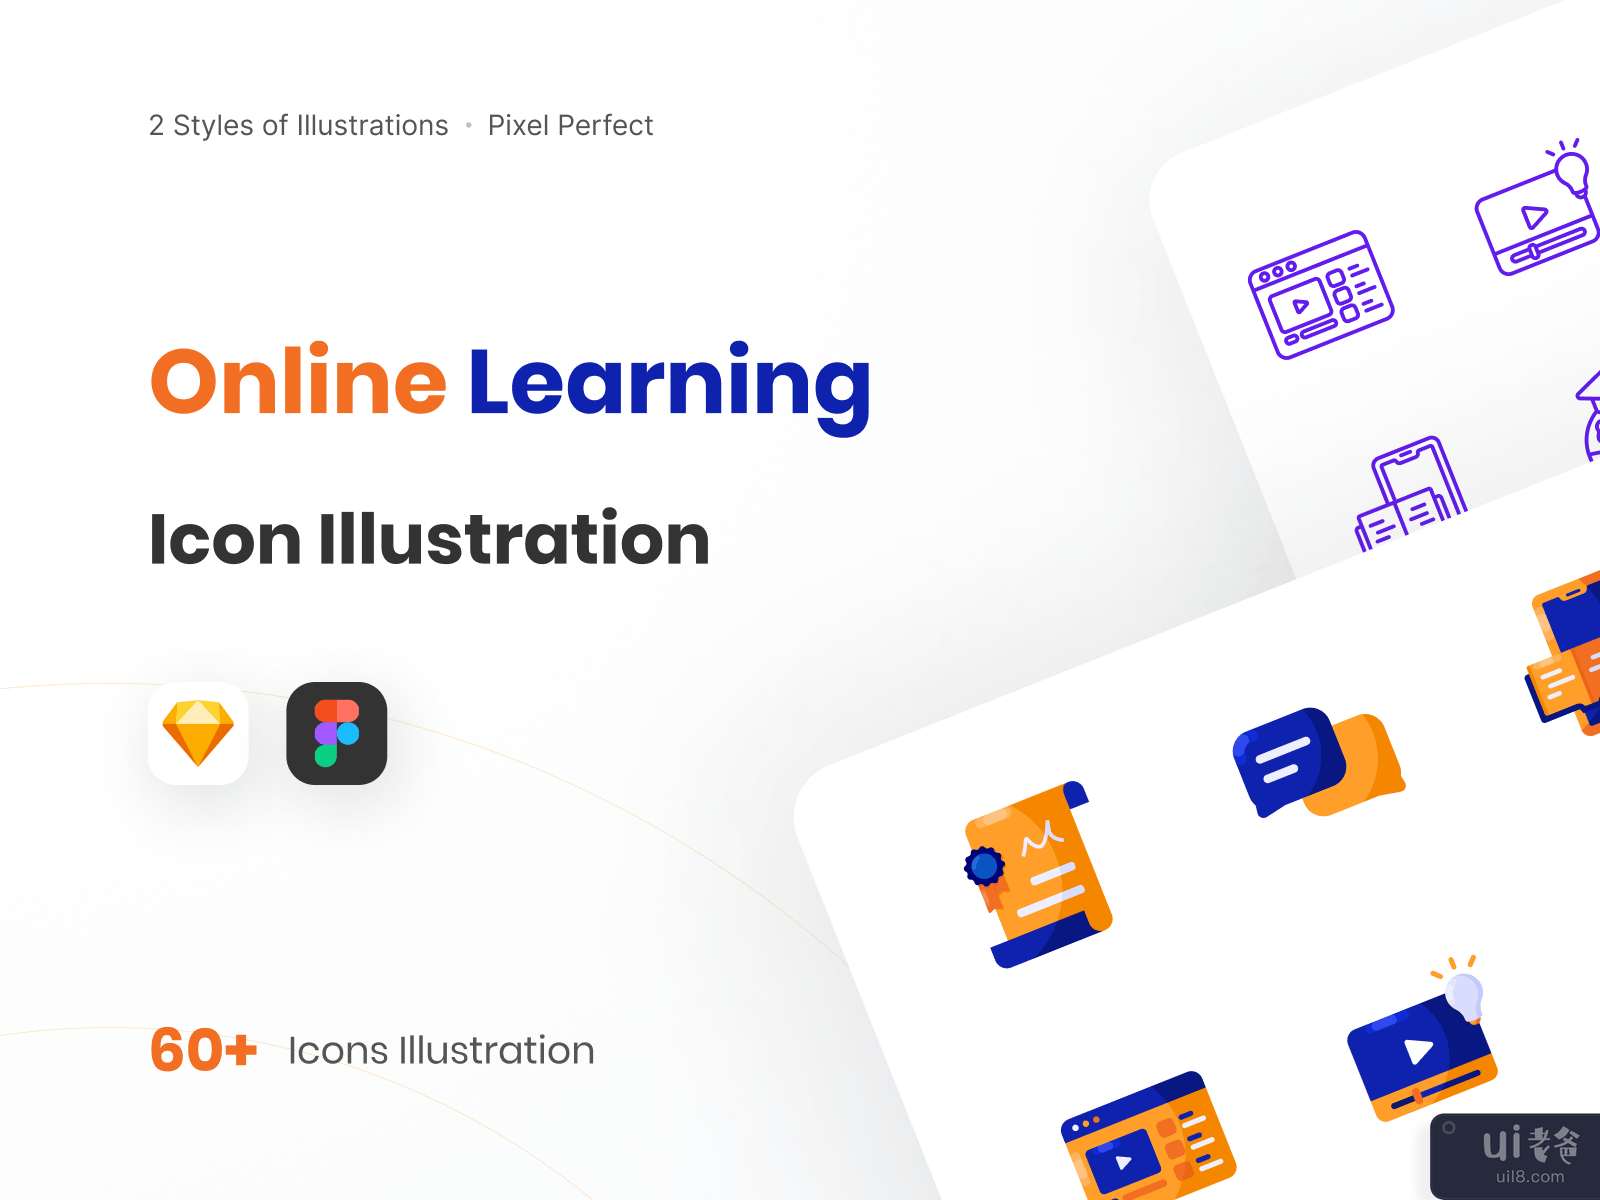 在线学习图标说明-线预览(Online Learning Icon Illustration - Line Preview)插图